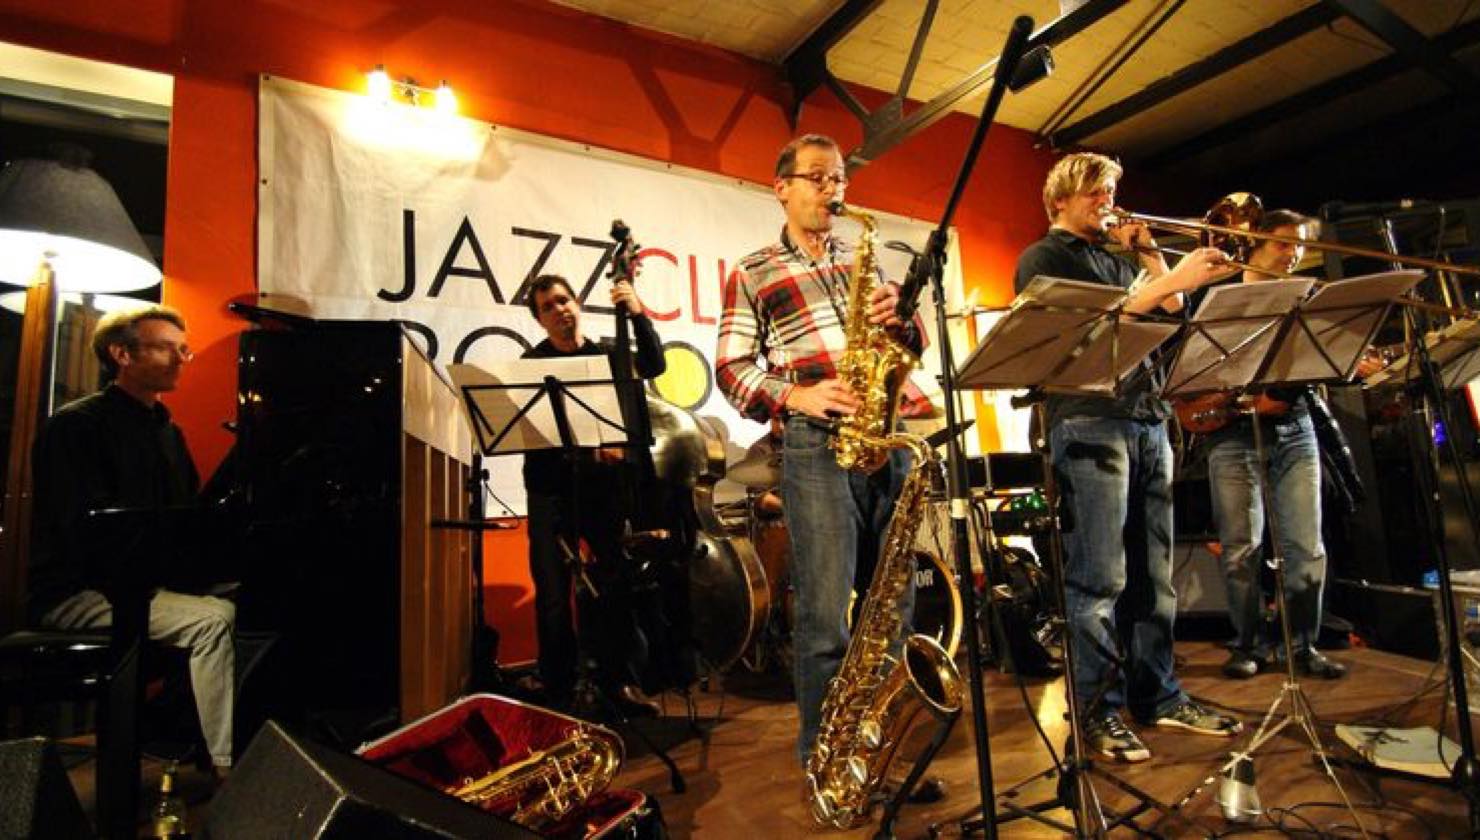 Jazzclub Rostock